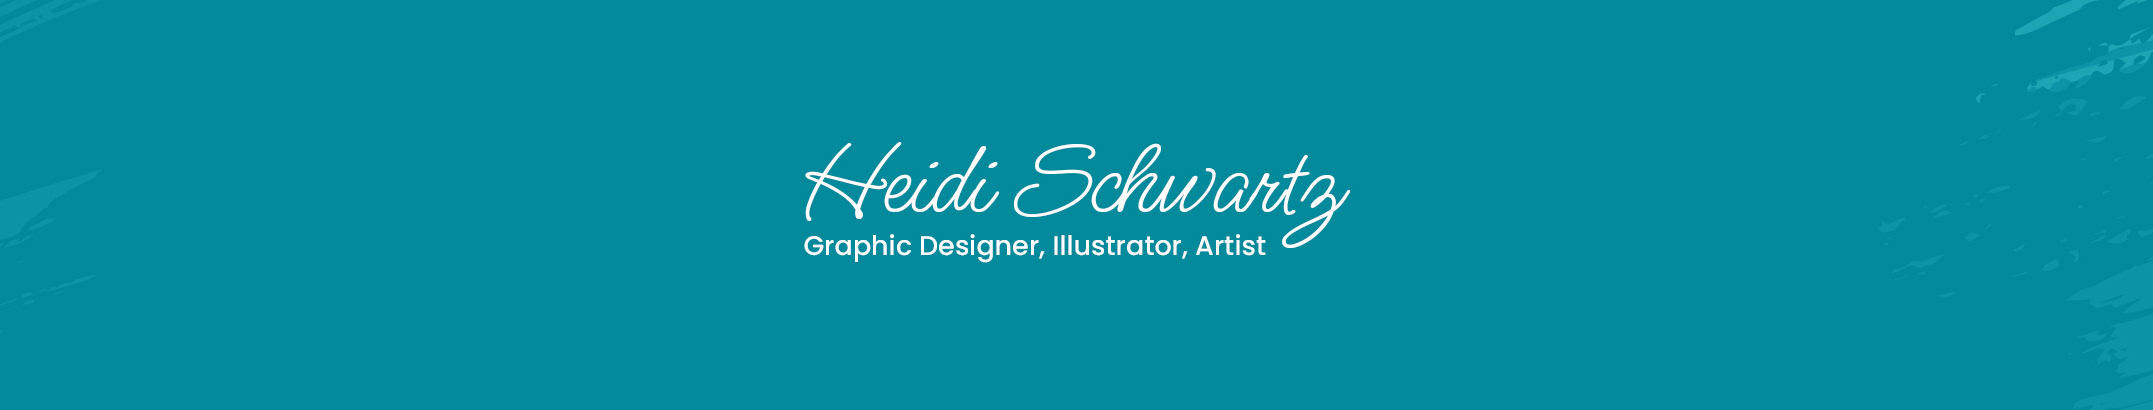 Heidi Schwartz's profile banner